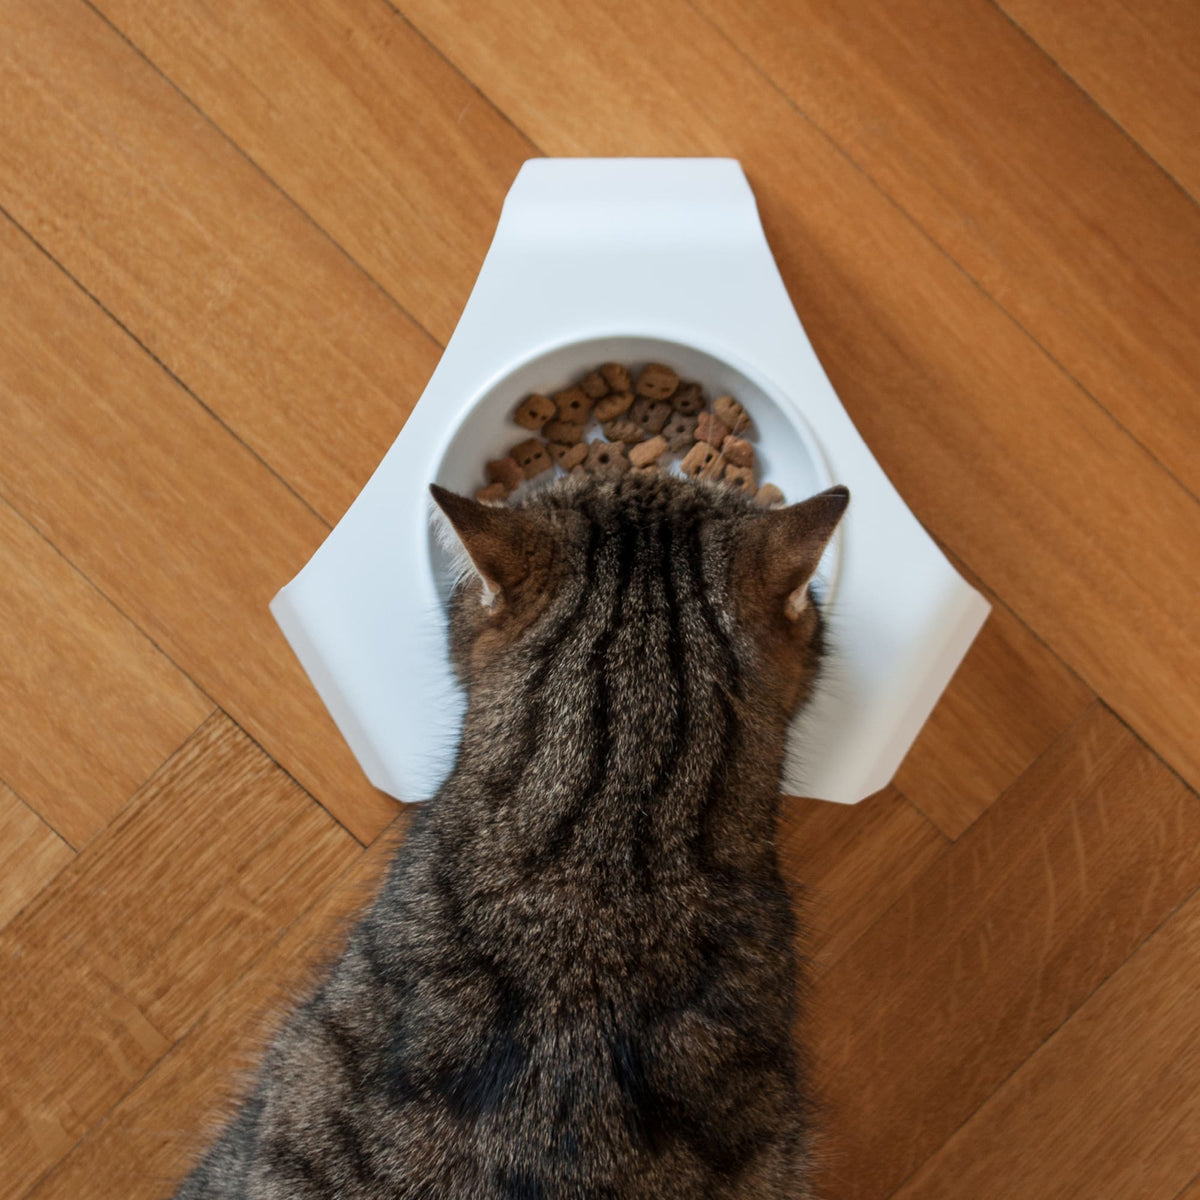 Cat food bowl &amp; place mat set